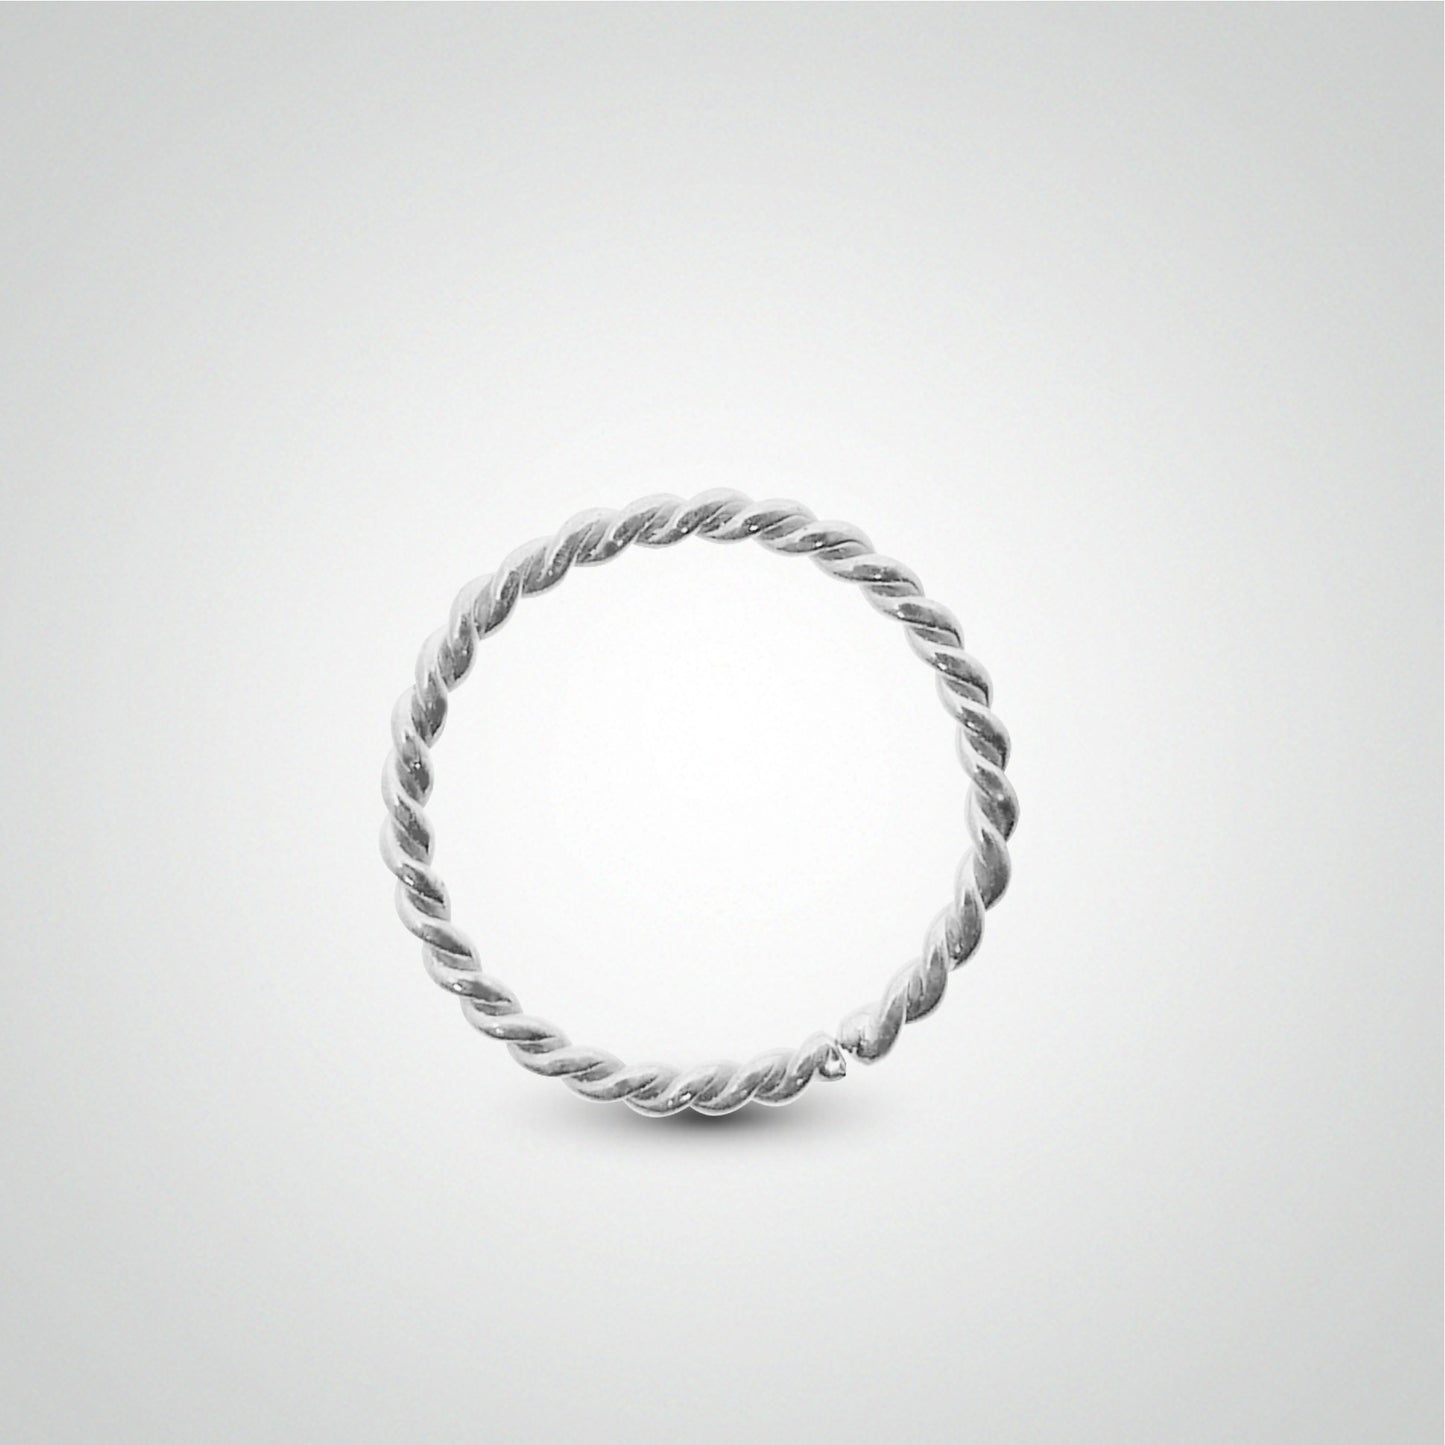 Piercing anti hélix : anneau en or blanc torsadé à écarter